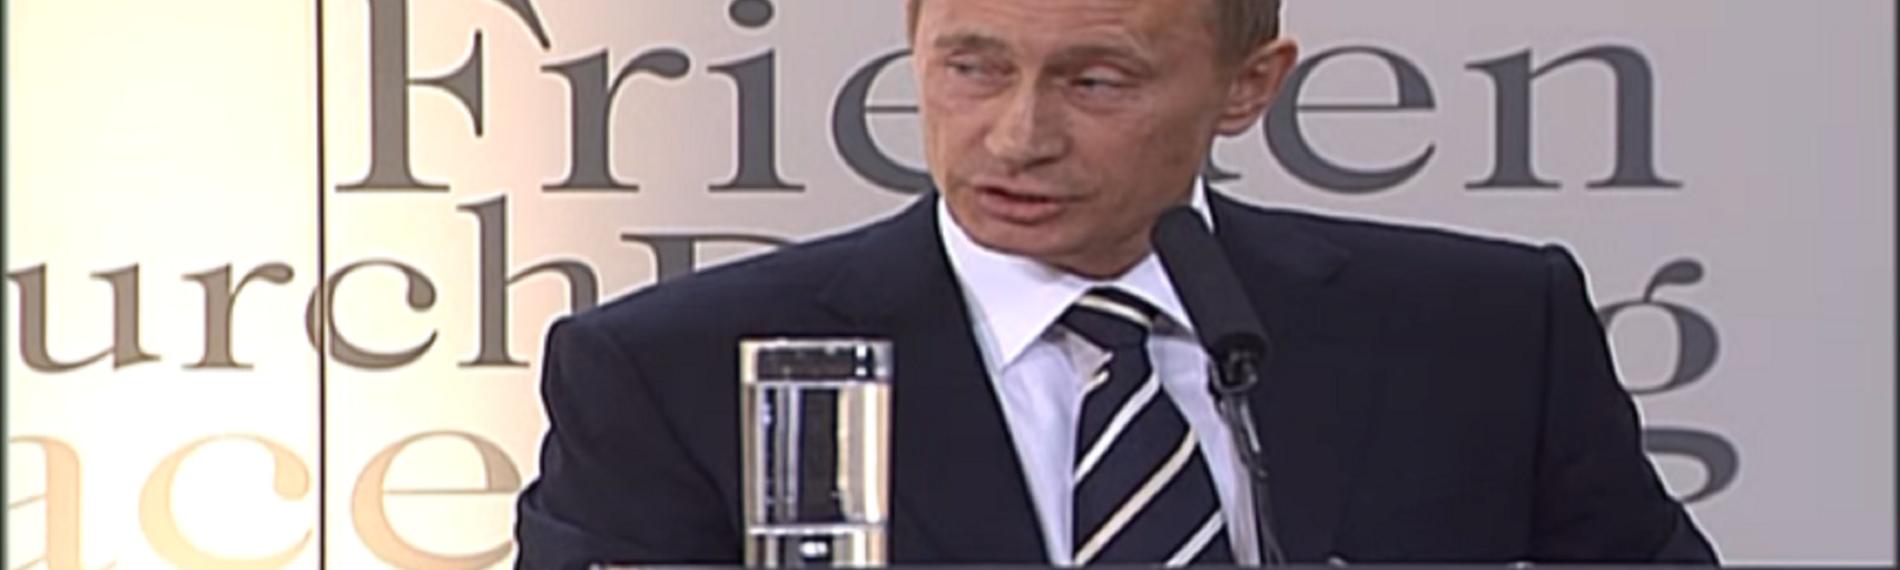 10.02.2007: Putin kritisiert USA-Politik